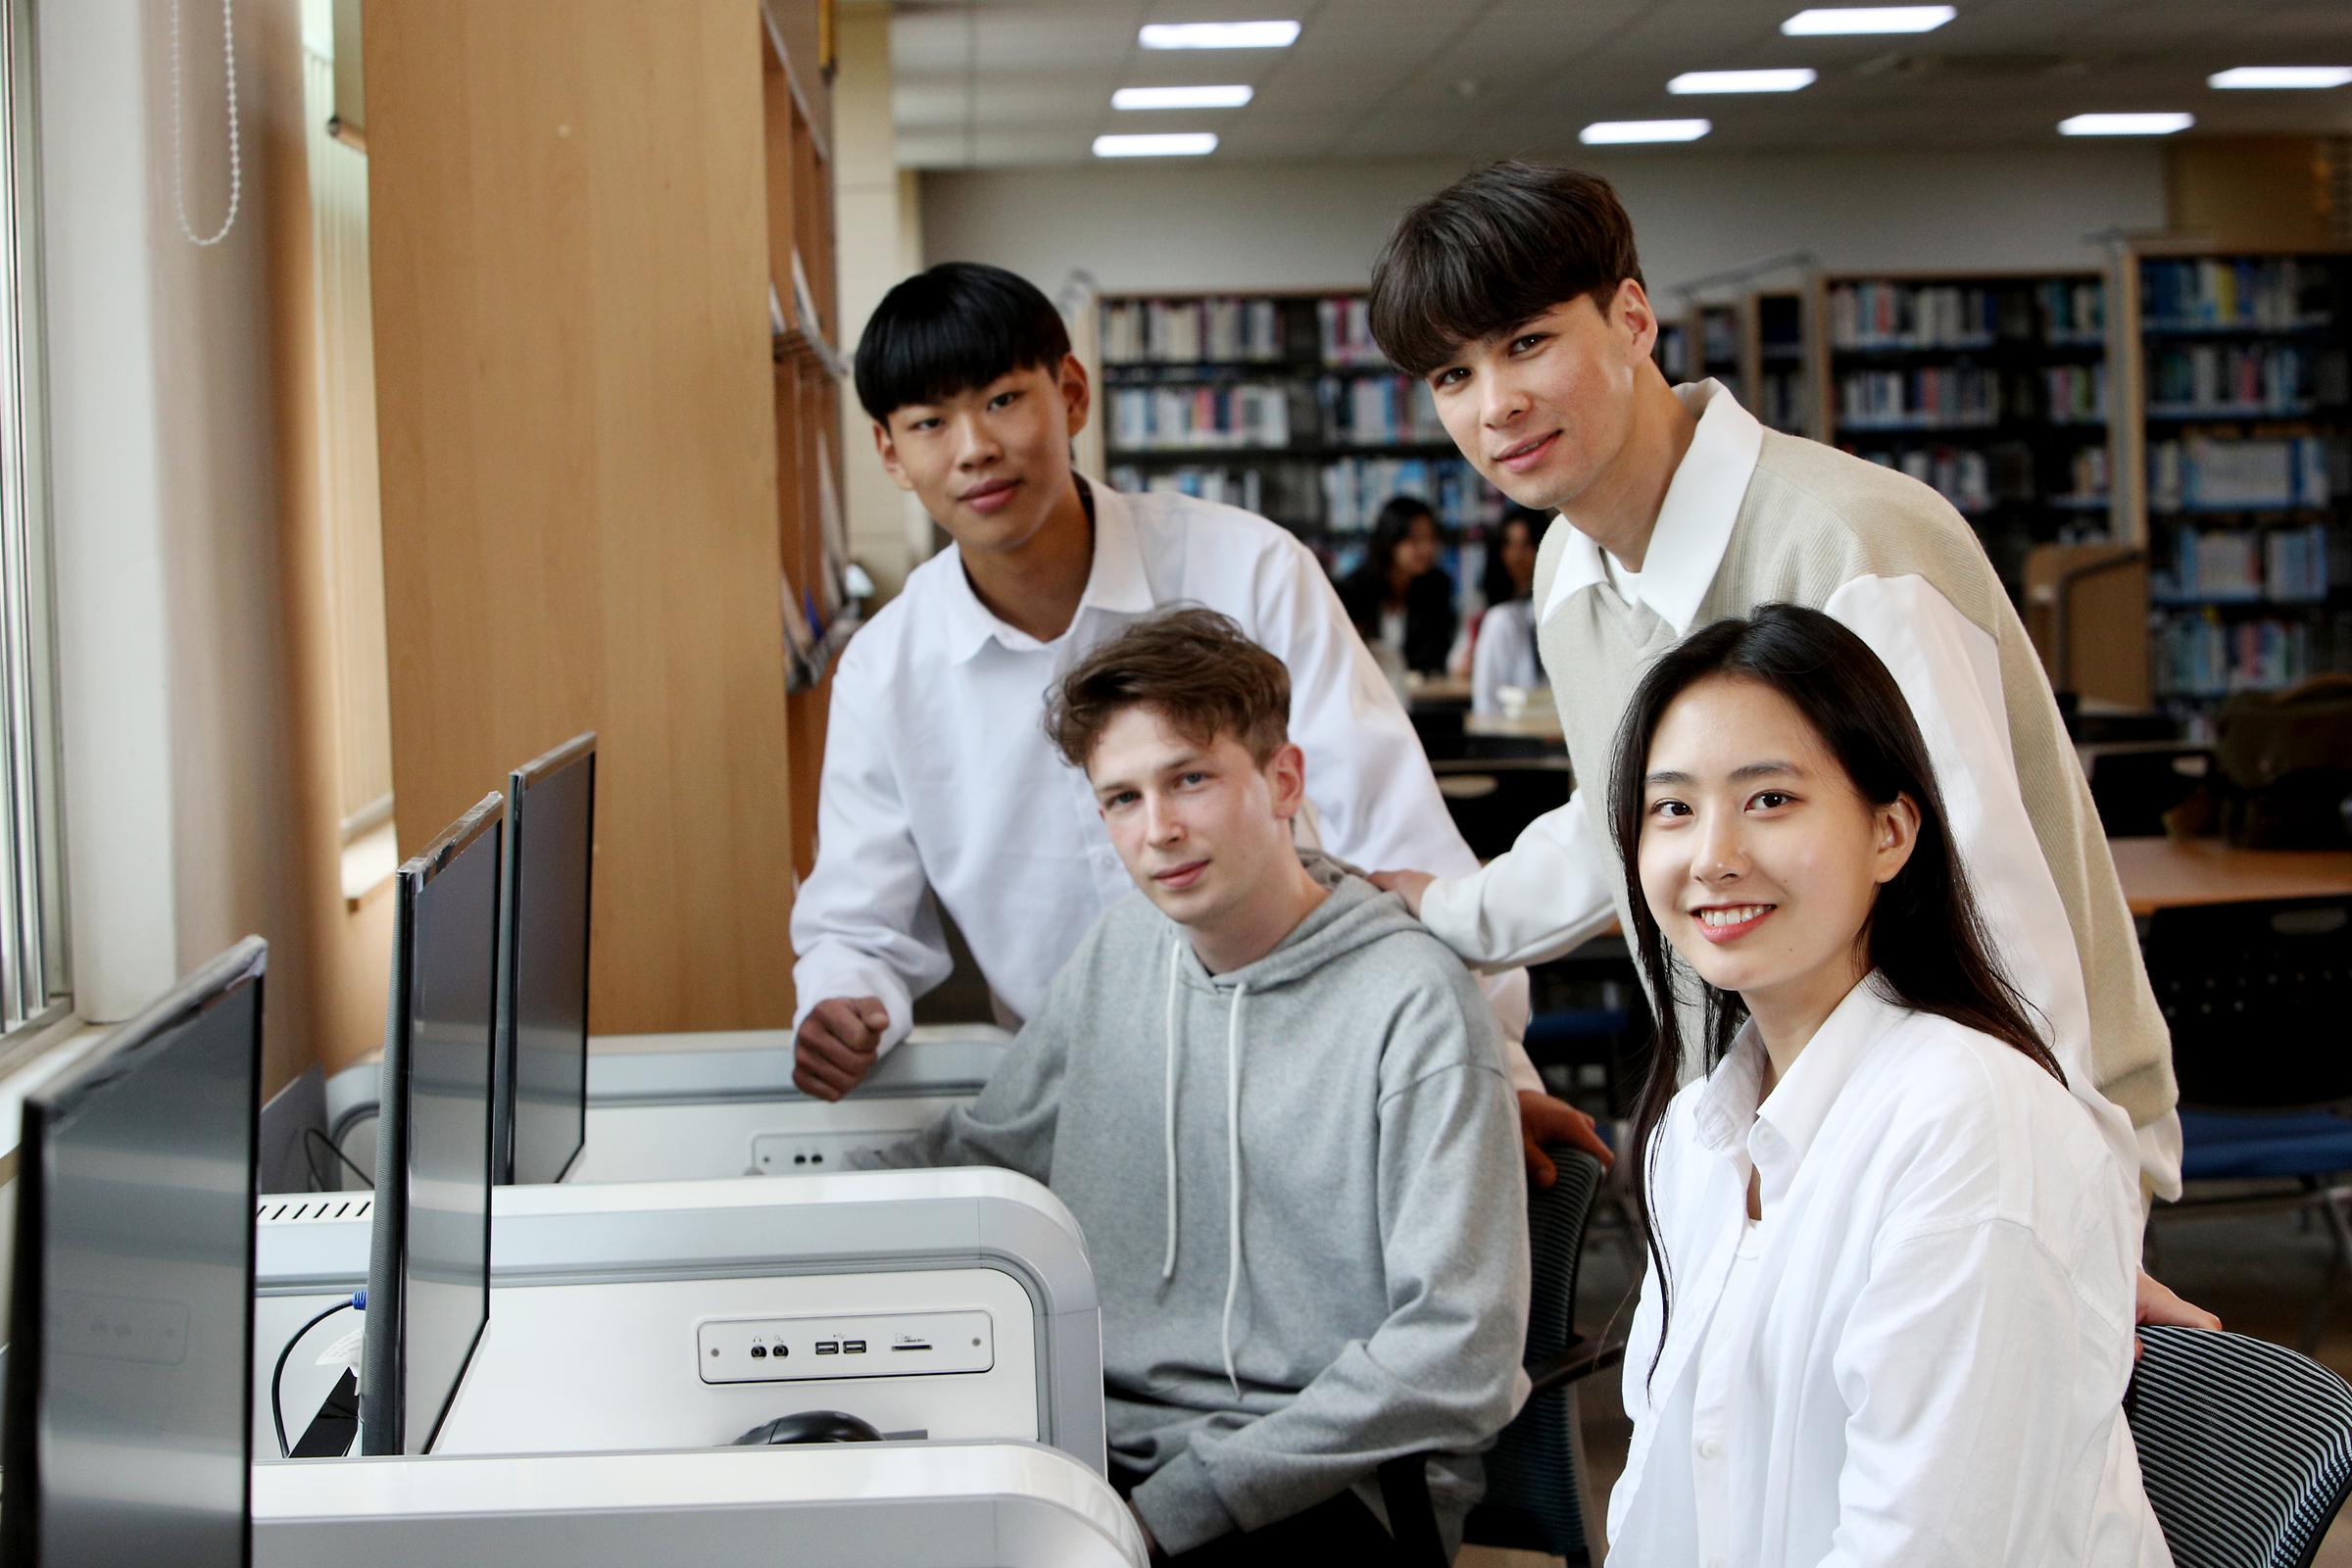 도서관의 컴퓨터 앞에 앉아 이야기를 나누는 네 명의 학생들 사진